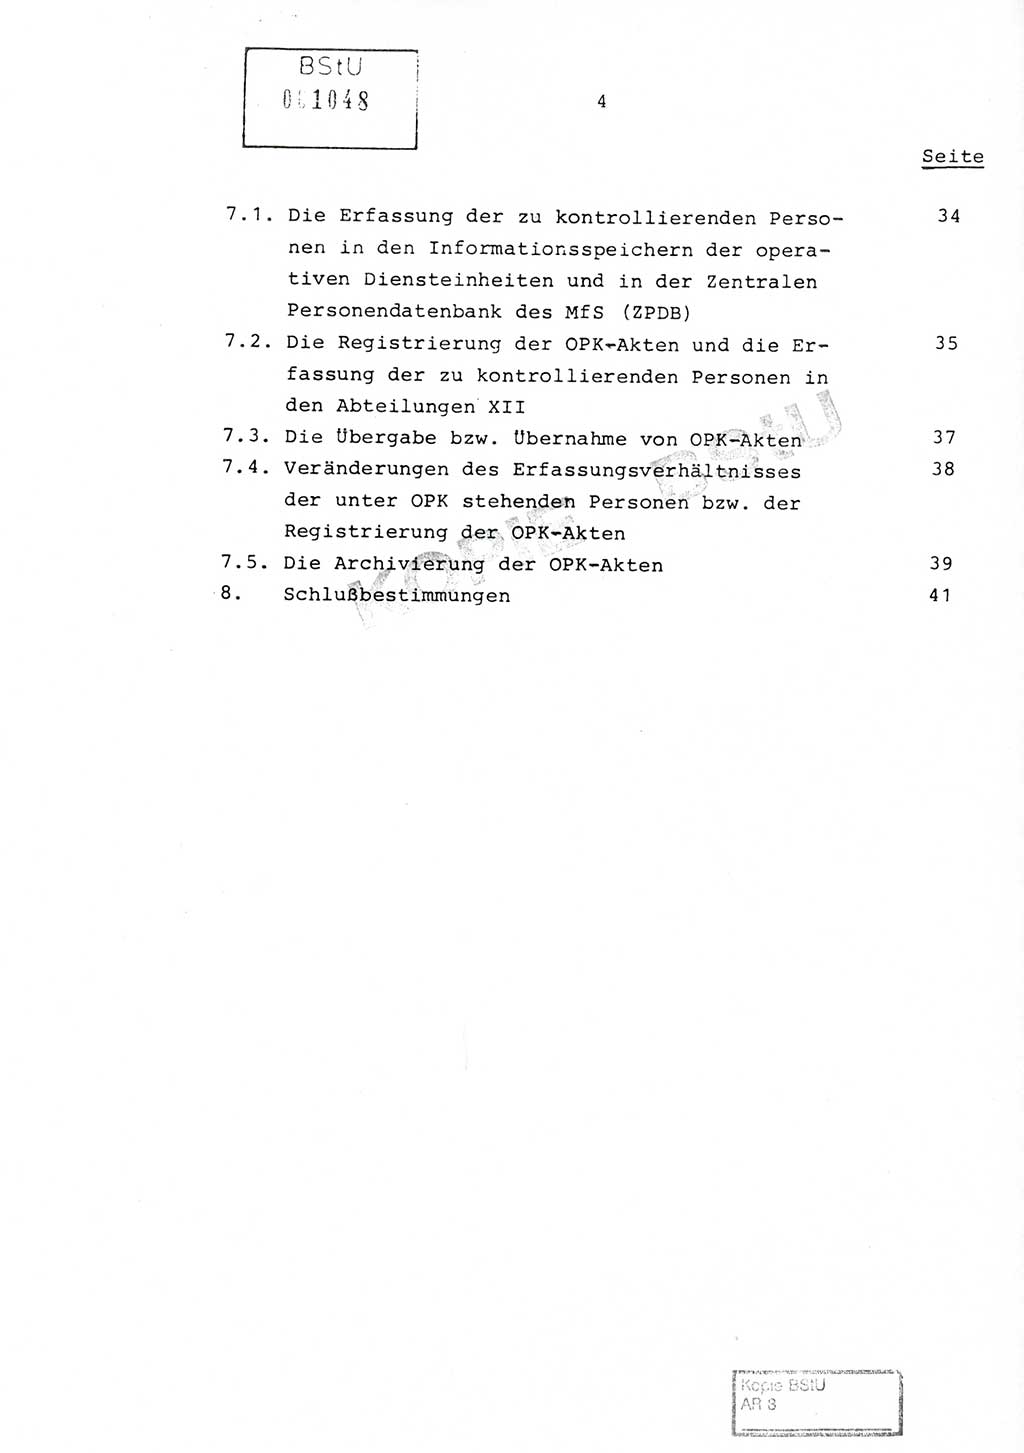 Richtlinie Nr. 1/81 über die operative Personenkontrolle (OPK), Ministerium für Staatssicherheit (MfS) [Deutsche Demokratische Republik (DDR)], Der Minister, Geheime Verschlußsache (GVS) ooo8-10/81, Berlin 1981, Blatt 4 (RL 1/81 OPK DDR MfS Min. GVS ooo8-10/81 1981, Bl. 4)